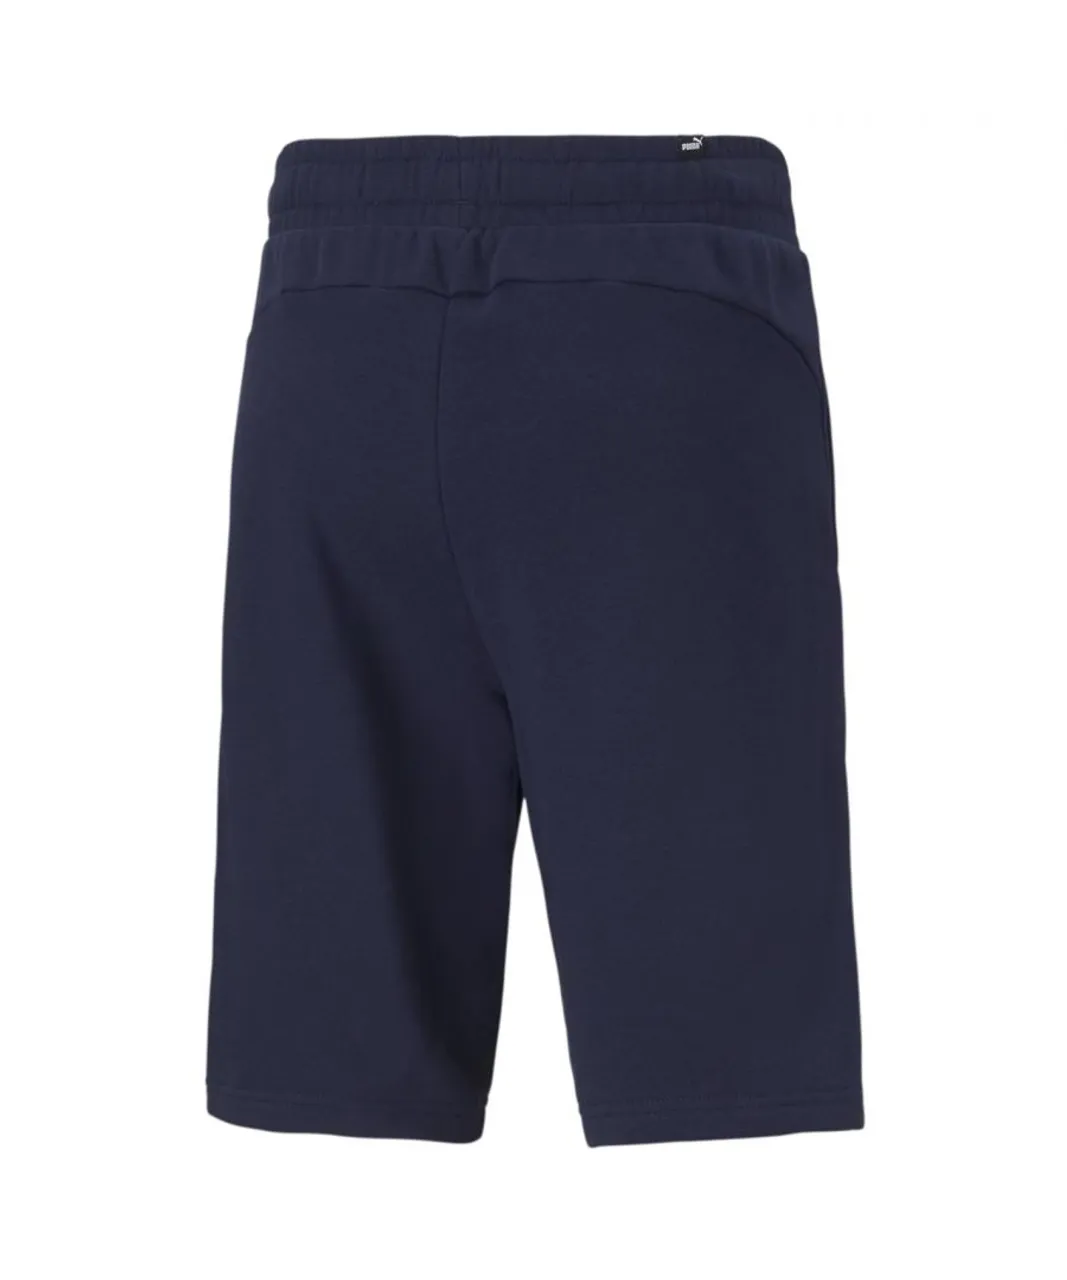 Puma Mens Essential Shorts - Blue